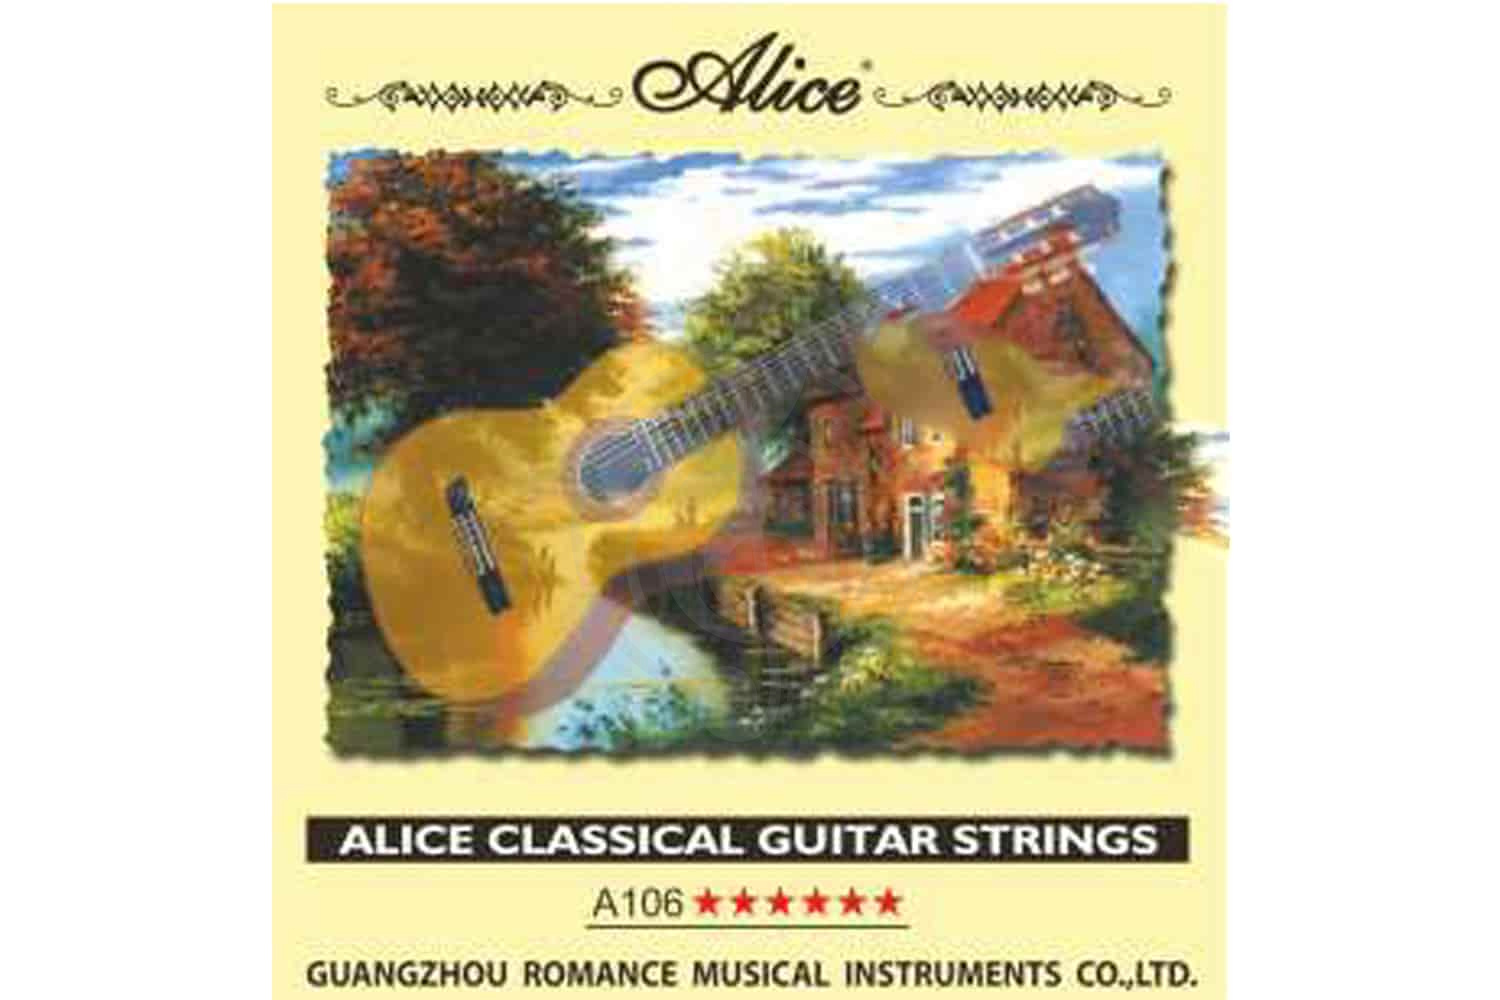 Струны для классической гитары Струны для классических гитар Alice Alice AC106-H-4 - Струна для классической гитары AC106-H-4 - фото 1